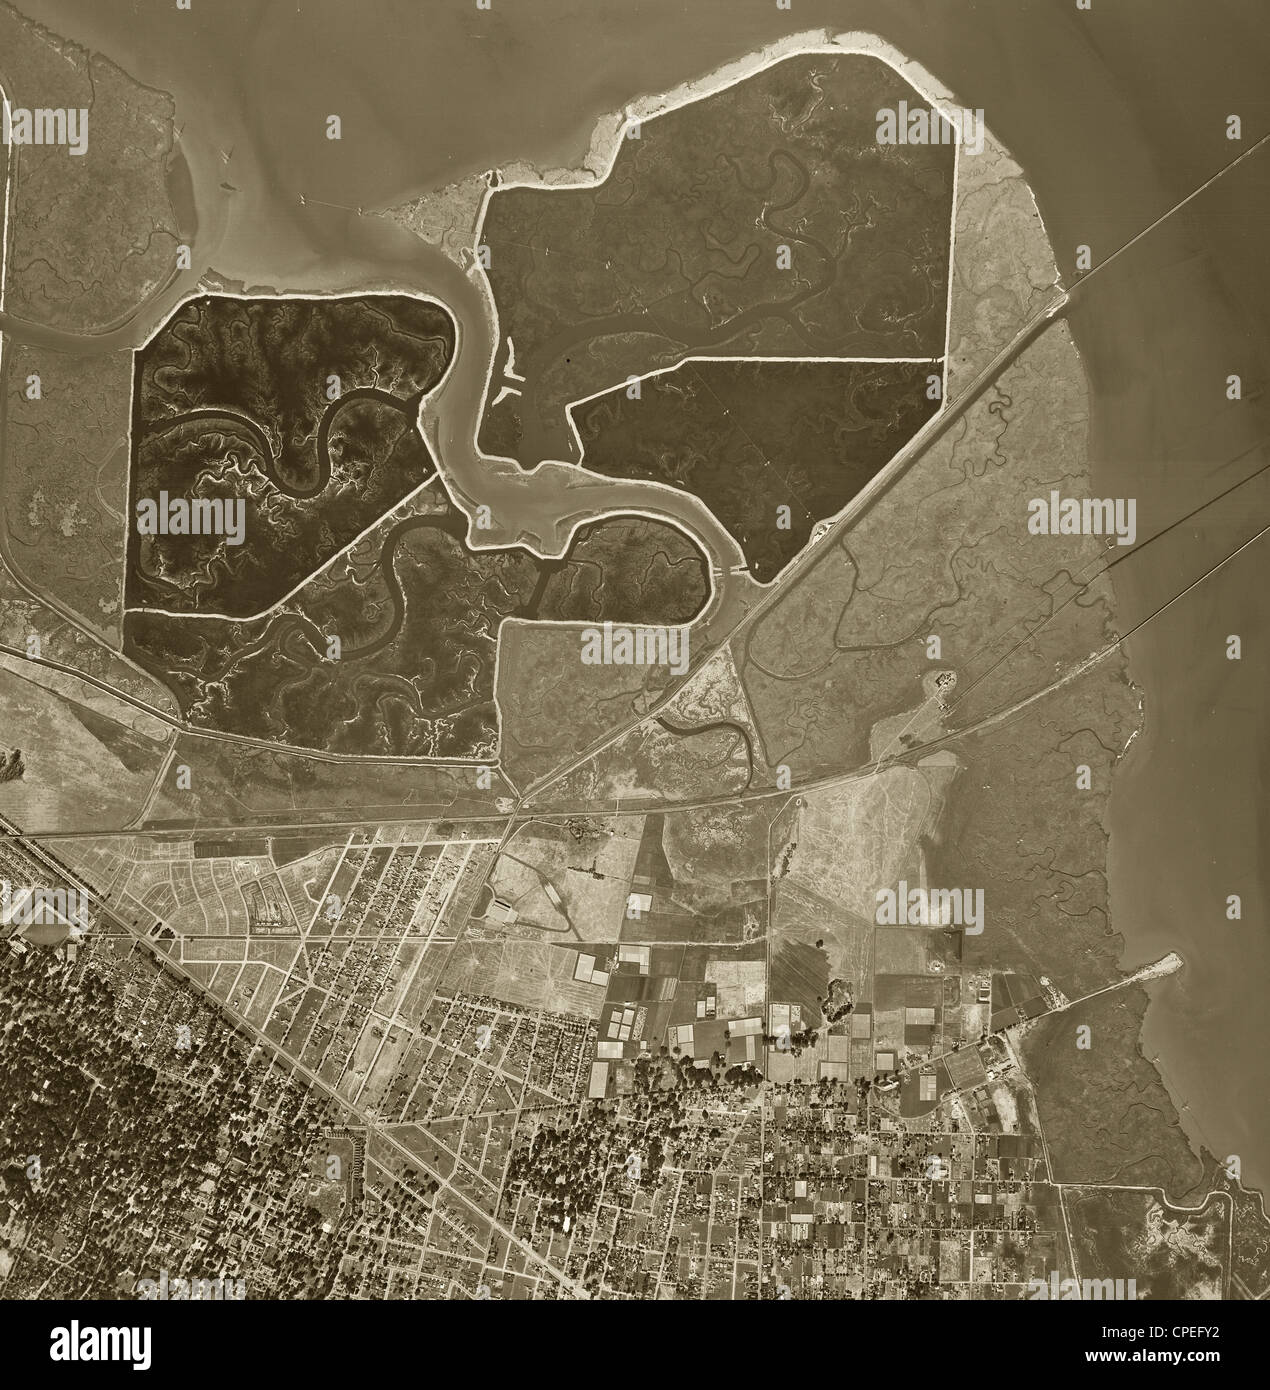 Fotografía aérea histórica de Menlo Park, California, 1948 Foto de stock